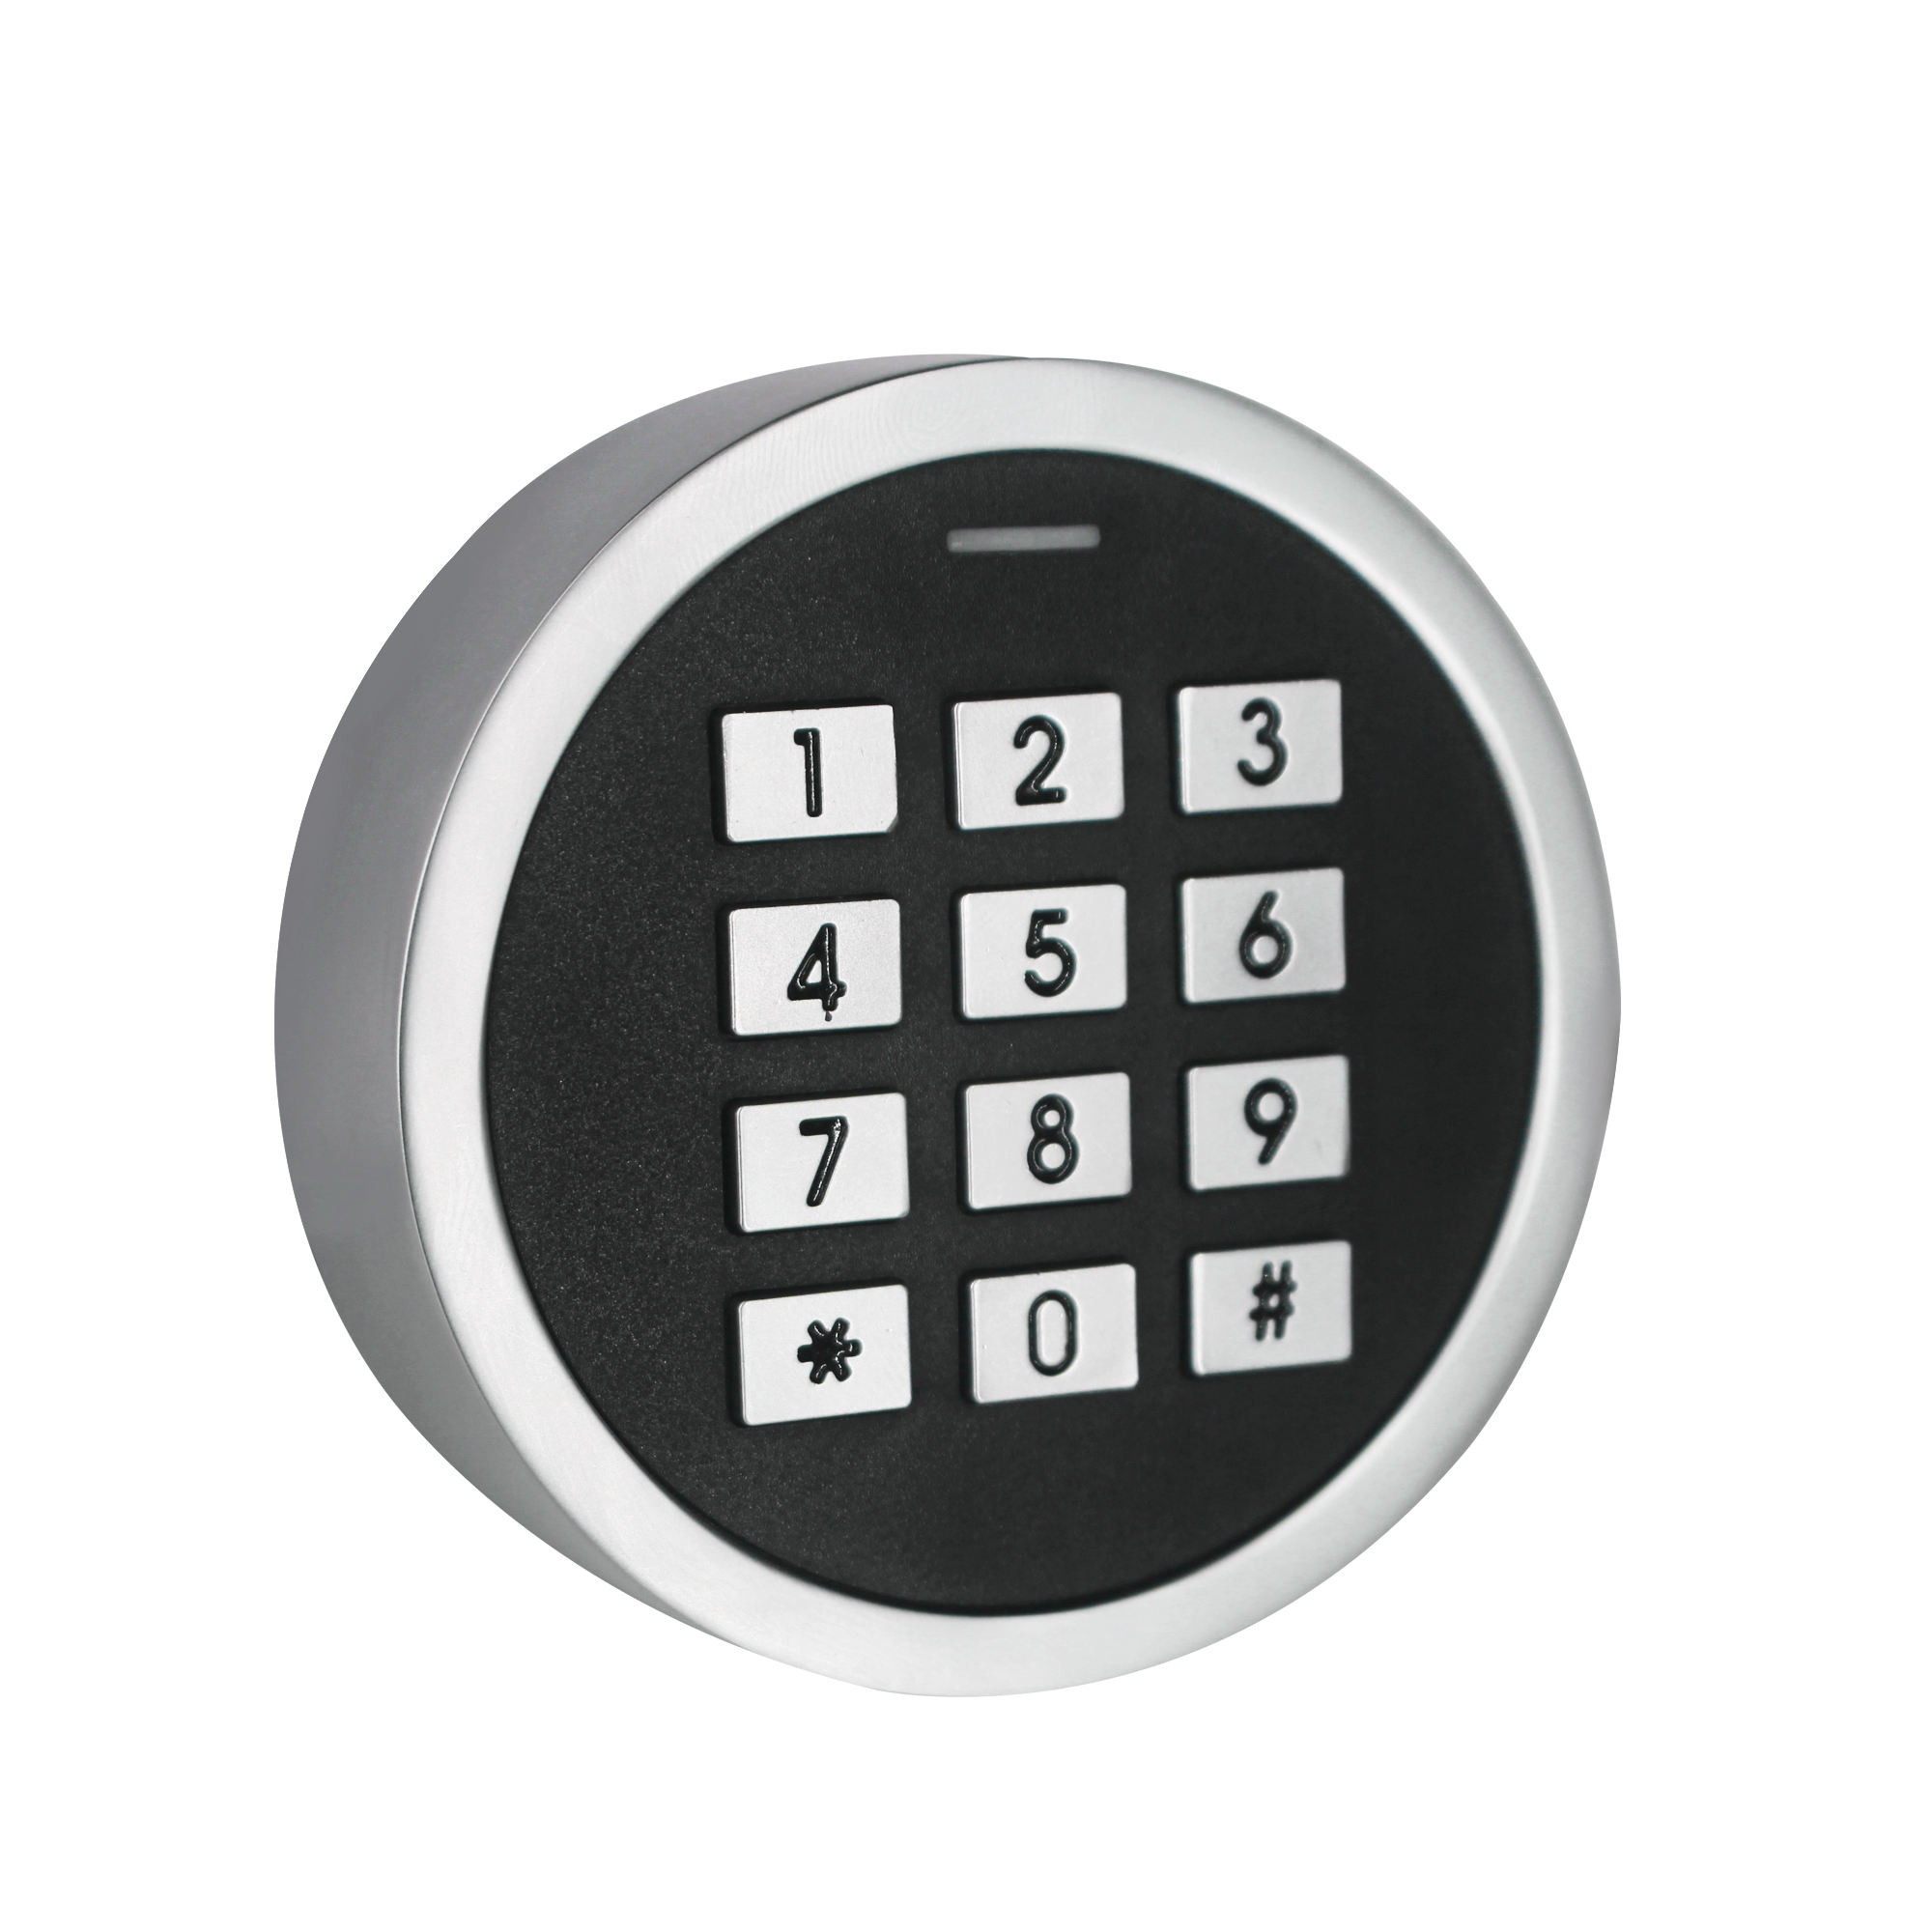 Mini contrôle d'accès en métal, clavier Bluetooth, avec application TuyaSmart, lecteur de carte RFID